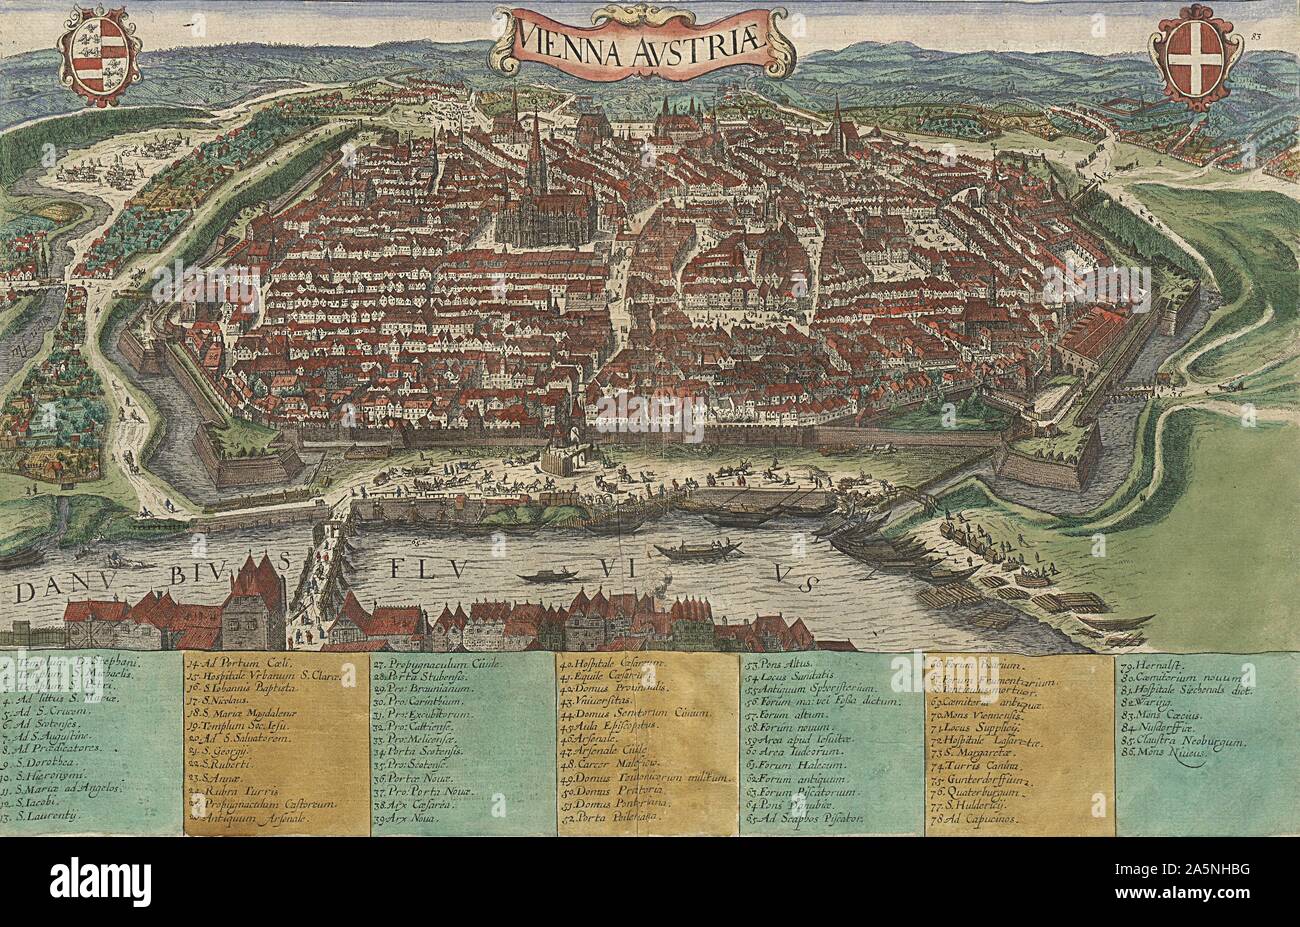 Wien Österreich, von "Civitates Orbis Terrarum", in Köln 1582-1617 veröffentlicht, herausgegeben von Georg Braun (1542 - 1622) von Franz Hogenberg (1535-1590), die Lage der Universität Wien Bibliothek eingraviert Stockfoto